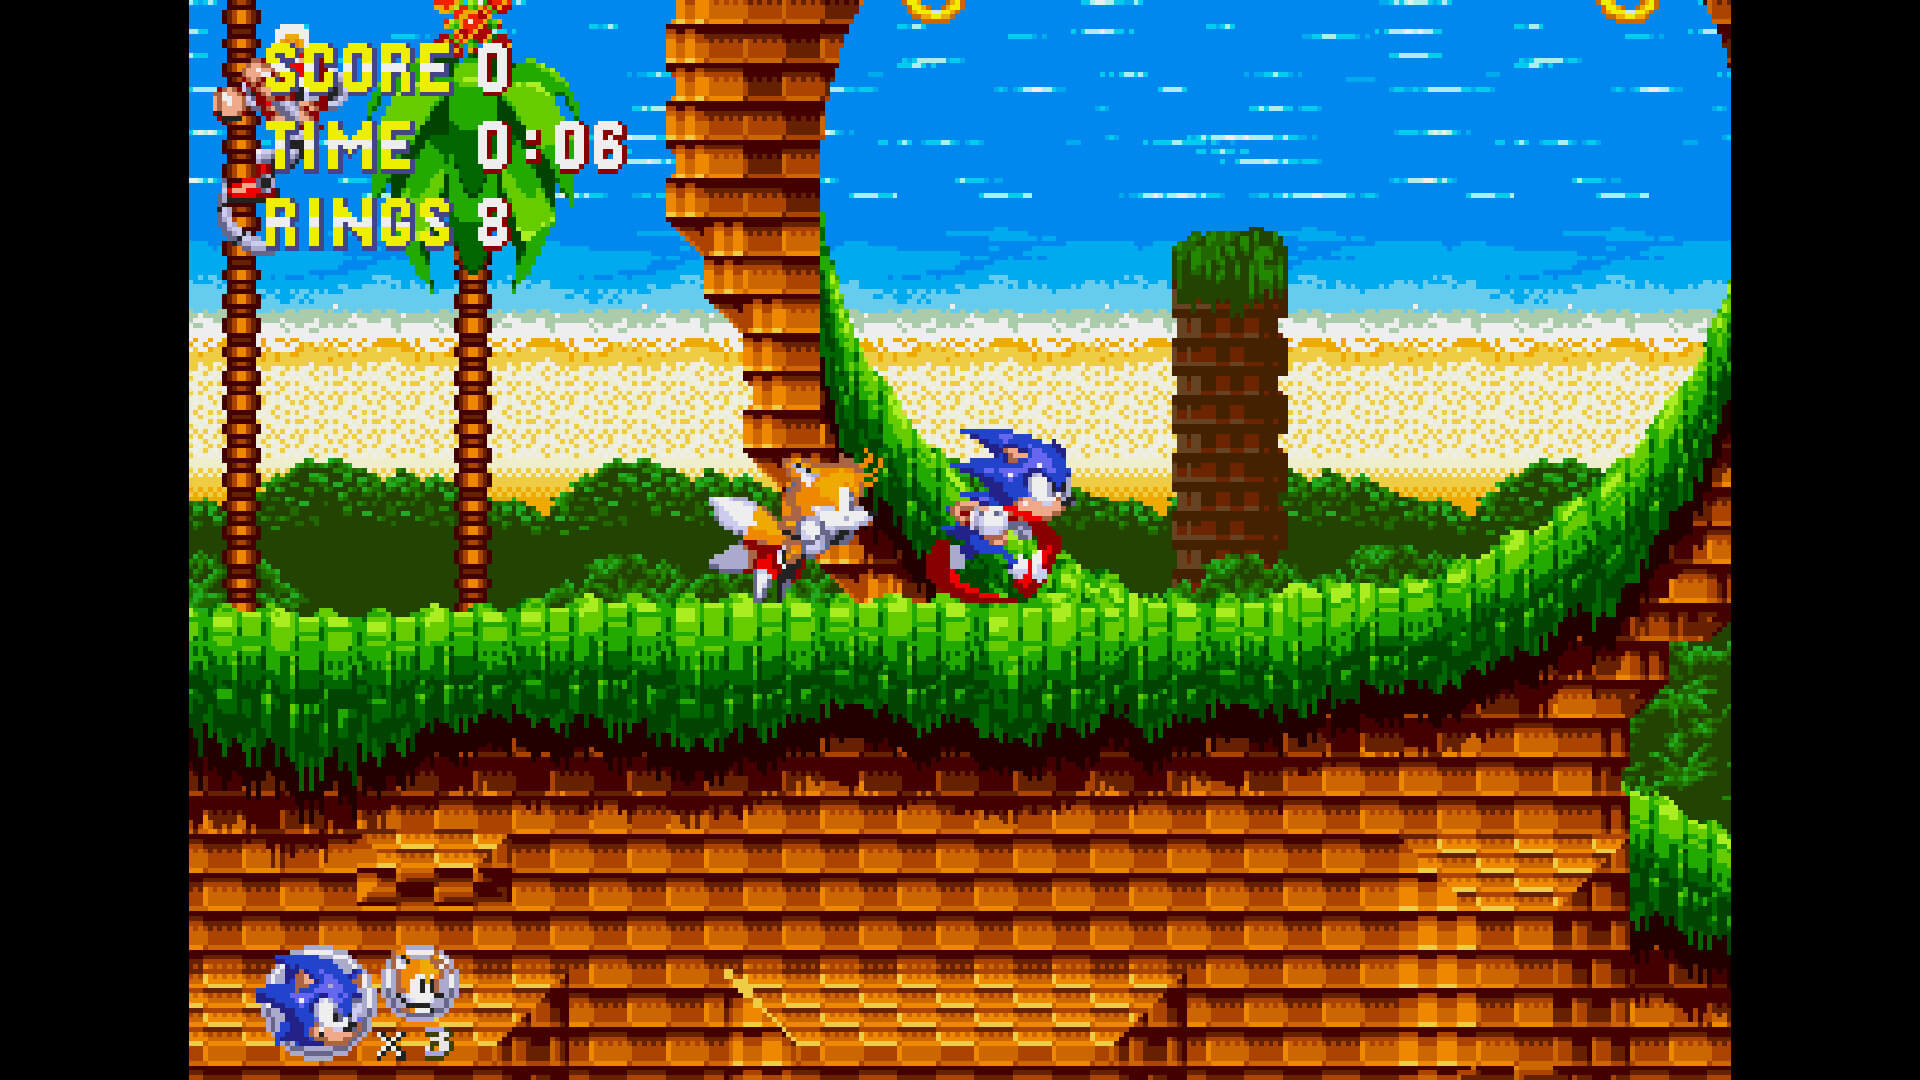 Để lại ấn tượng đáng nhớ với fan của huyền thoại Sonic, phiên bản fan remake 16-bit của Sonic Triple Trouble là một sự lựa chọn tuyệt vời. Hãy tải xuống và chiêm ngưỡng vẻ đẹp của nhân vật của bạn trong trò chơi điện tử 16 bit đầy màu sắc.